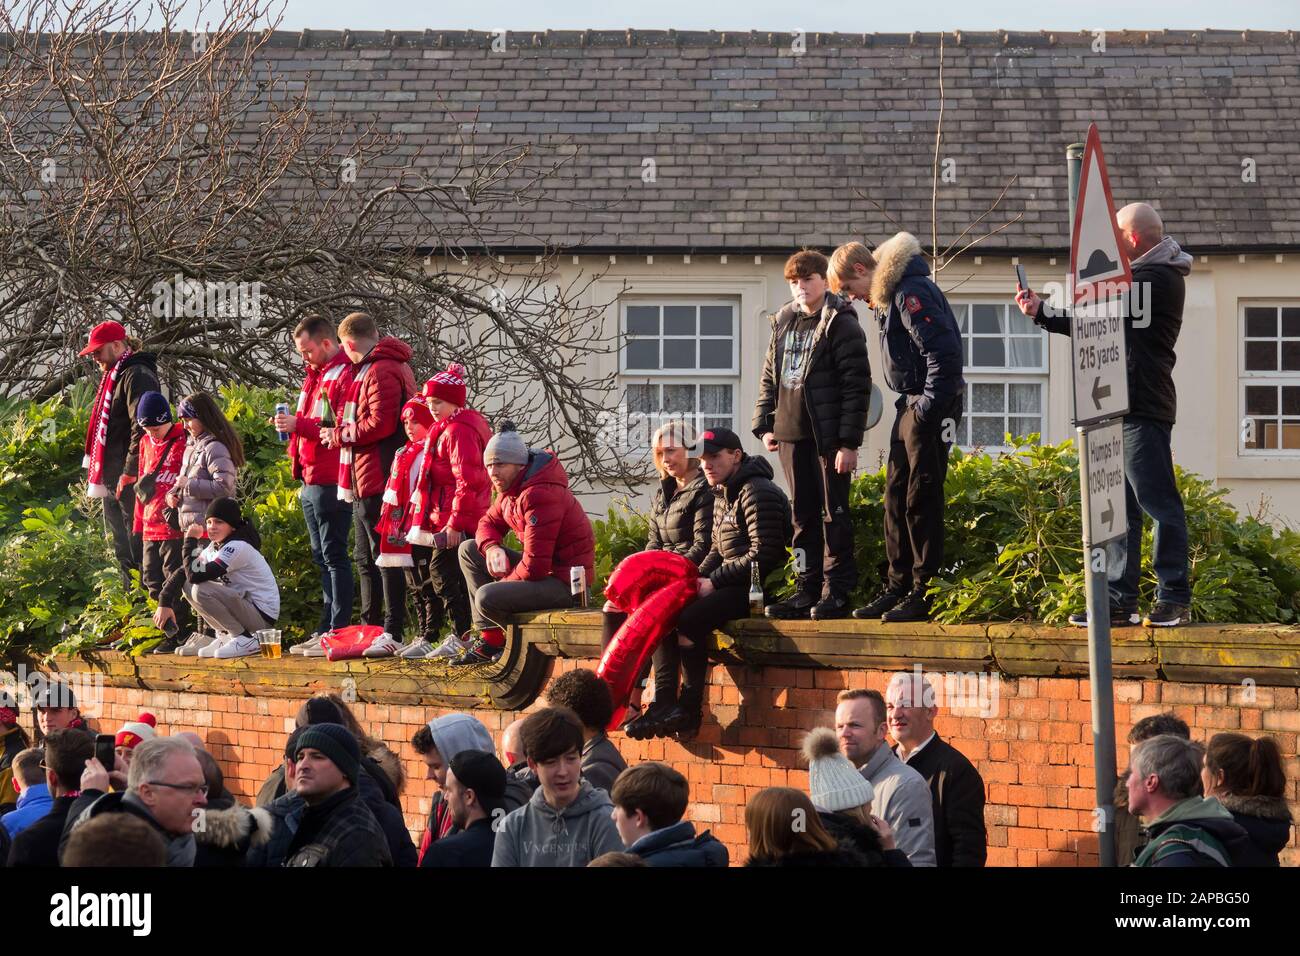 Kinder und Erwachsene, die LFC-Farben tragen, stehen an einer Wand und warten darauf, den Teamtrainer von Anfield Liverpool zu begrüßen. Stockfoto